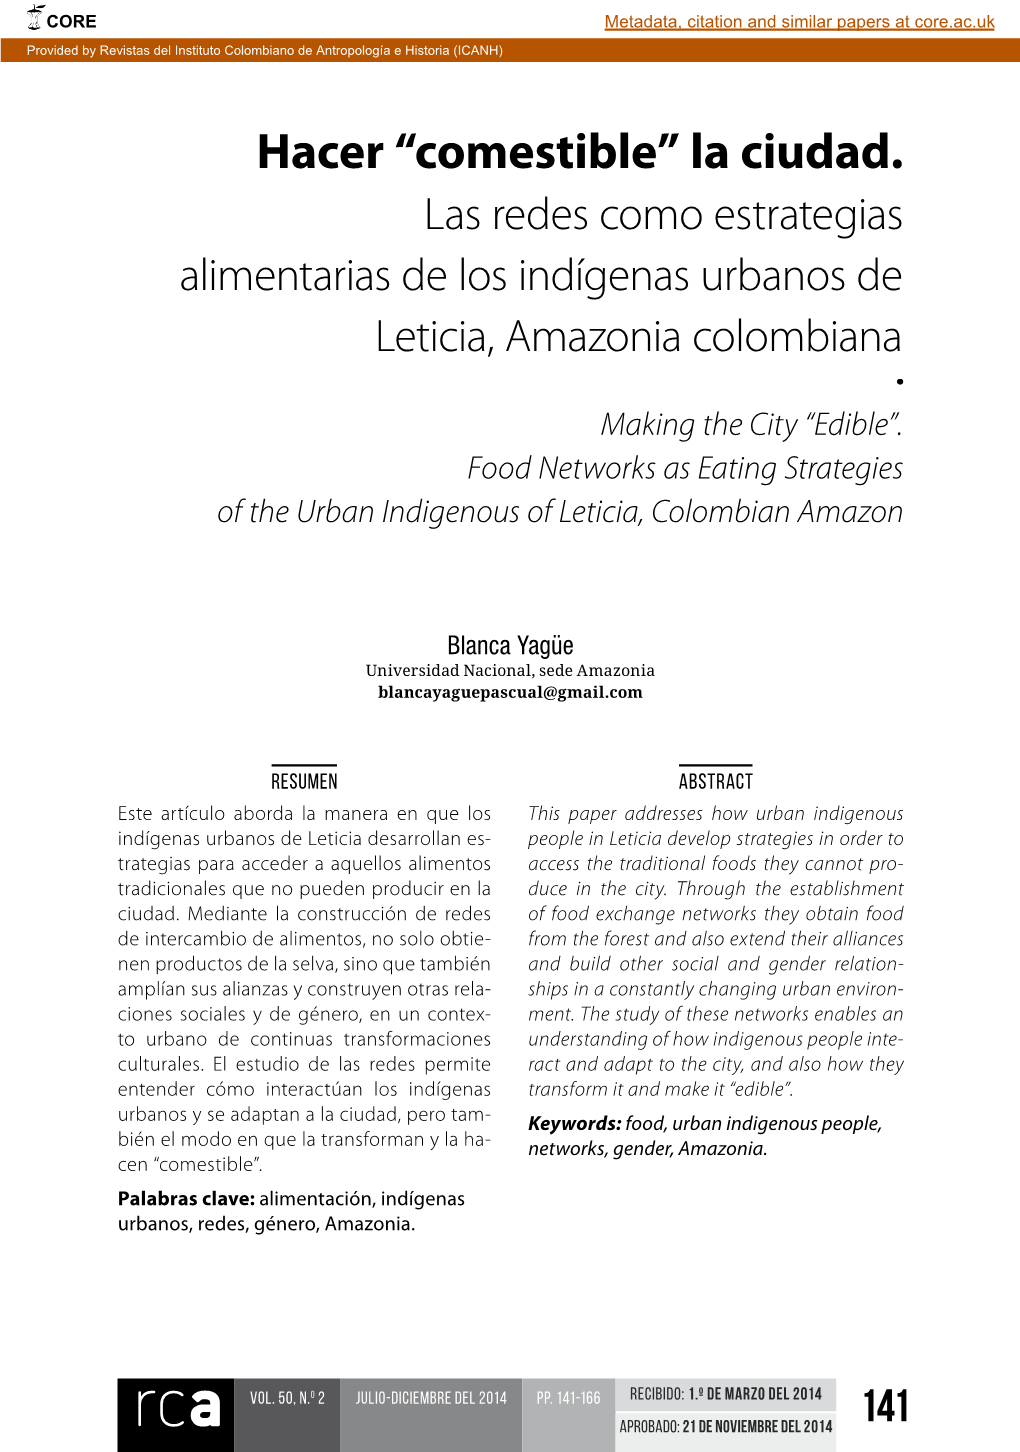 Hacer “Comestible” La Ciudad. Las Redes Como Estrategias Alimentarias De Los Indígenas Urbanos De Leticia, Amazonia Colombiana